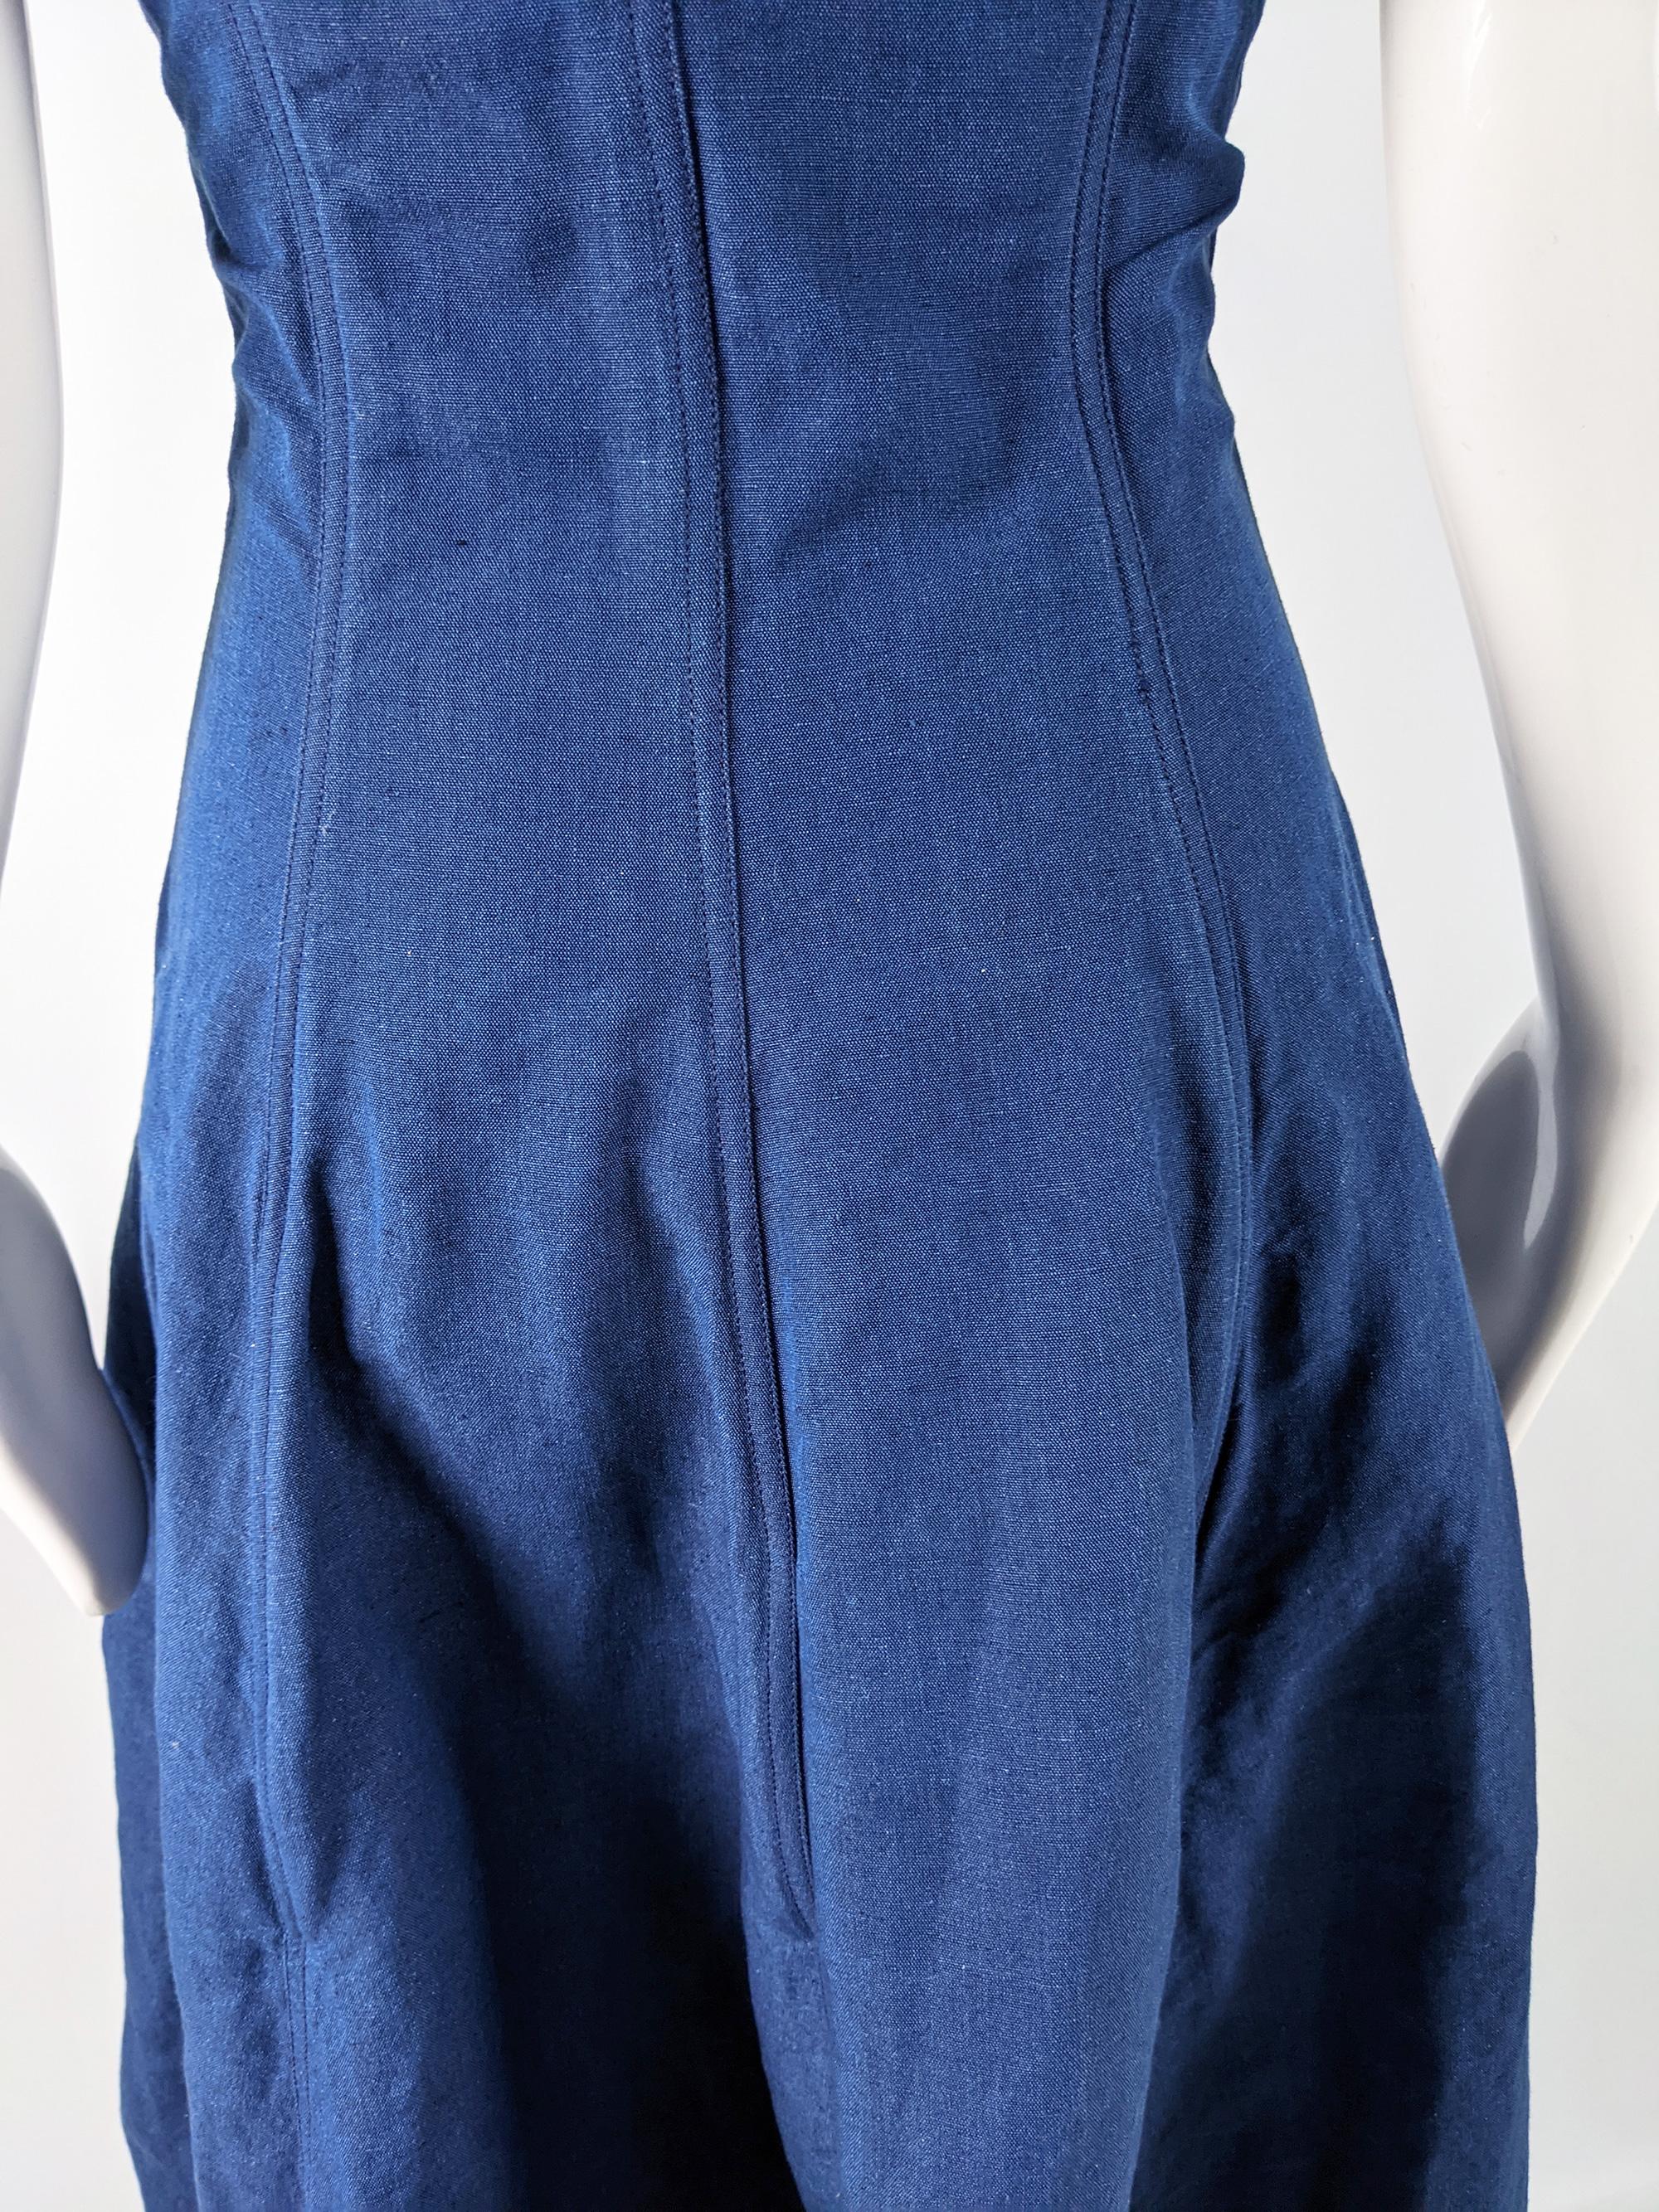 Katherine Hamnett Blue Linen Boned Maxi Dress For Sale 4